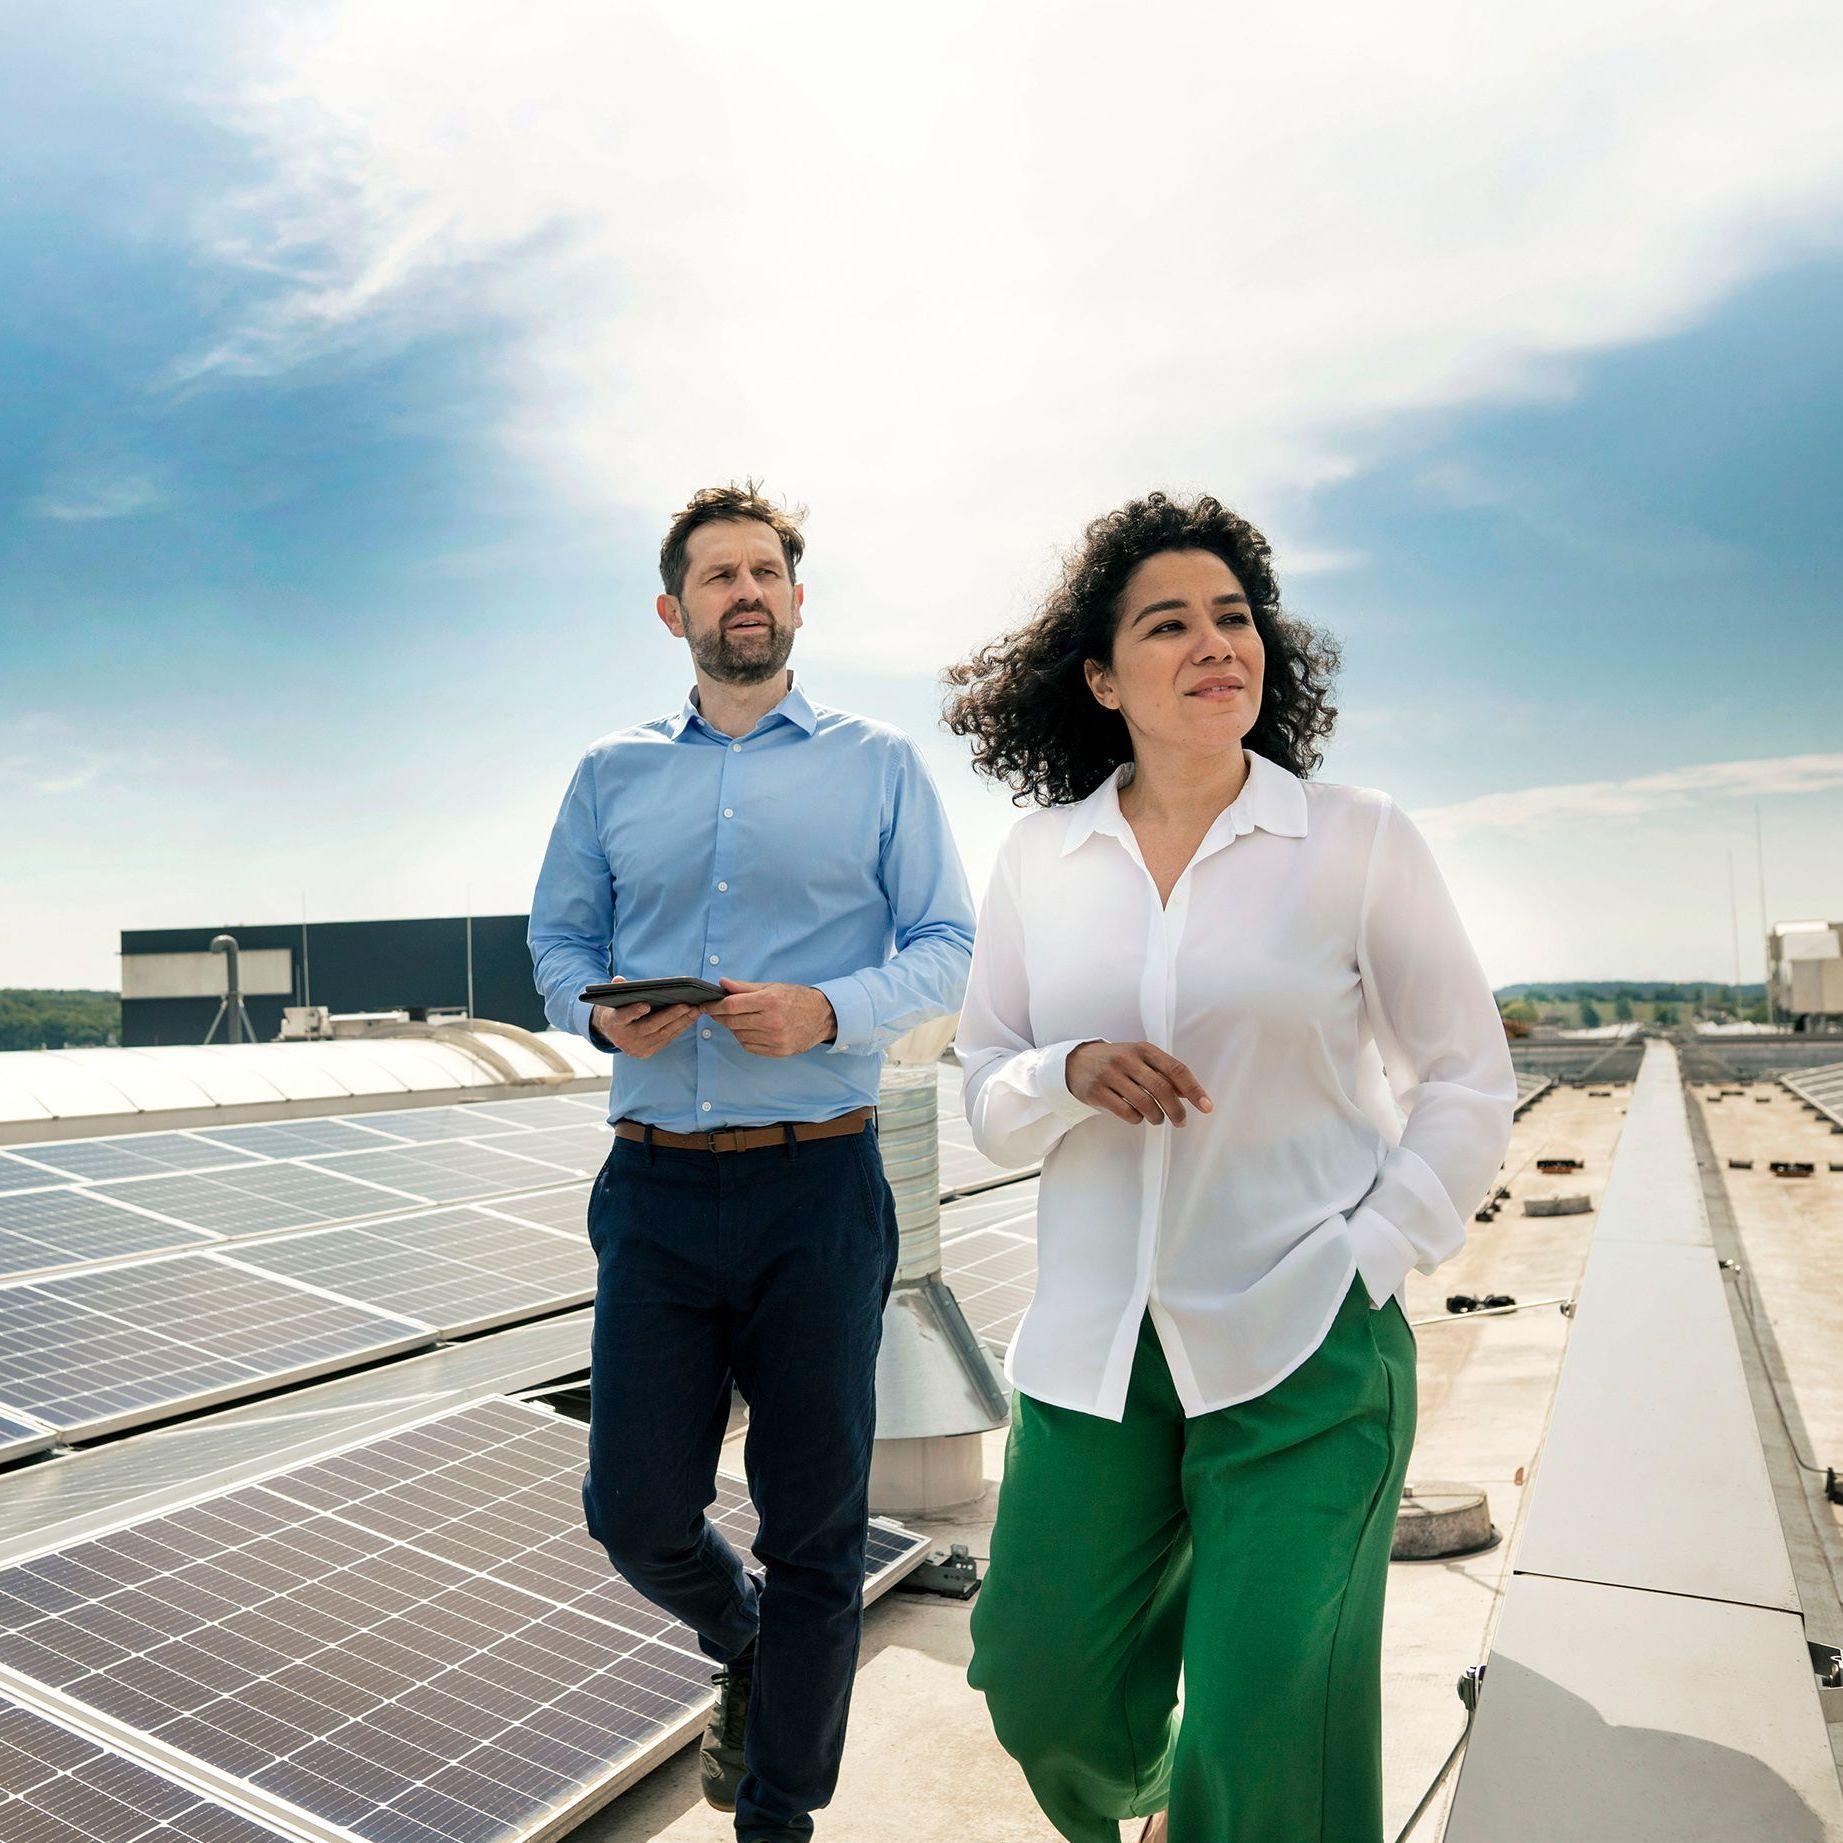 Eine Frau und ein Mann in Businesskleidung laufen bei heiterem Wetter auf dem Dach eines großen Gebäudes, auf welchem eine Photovoltaikanlage installiert ist.